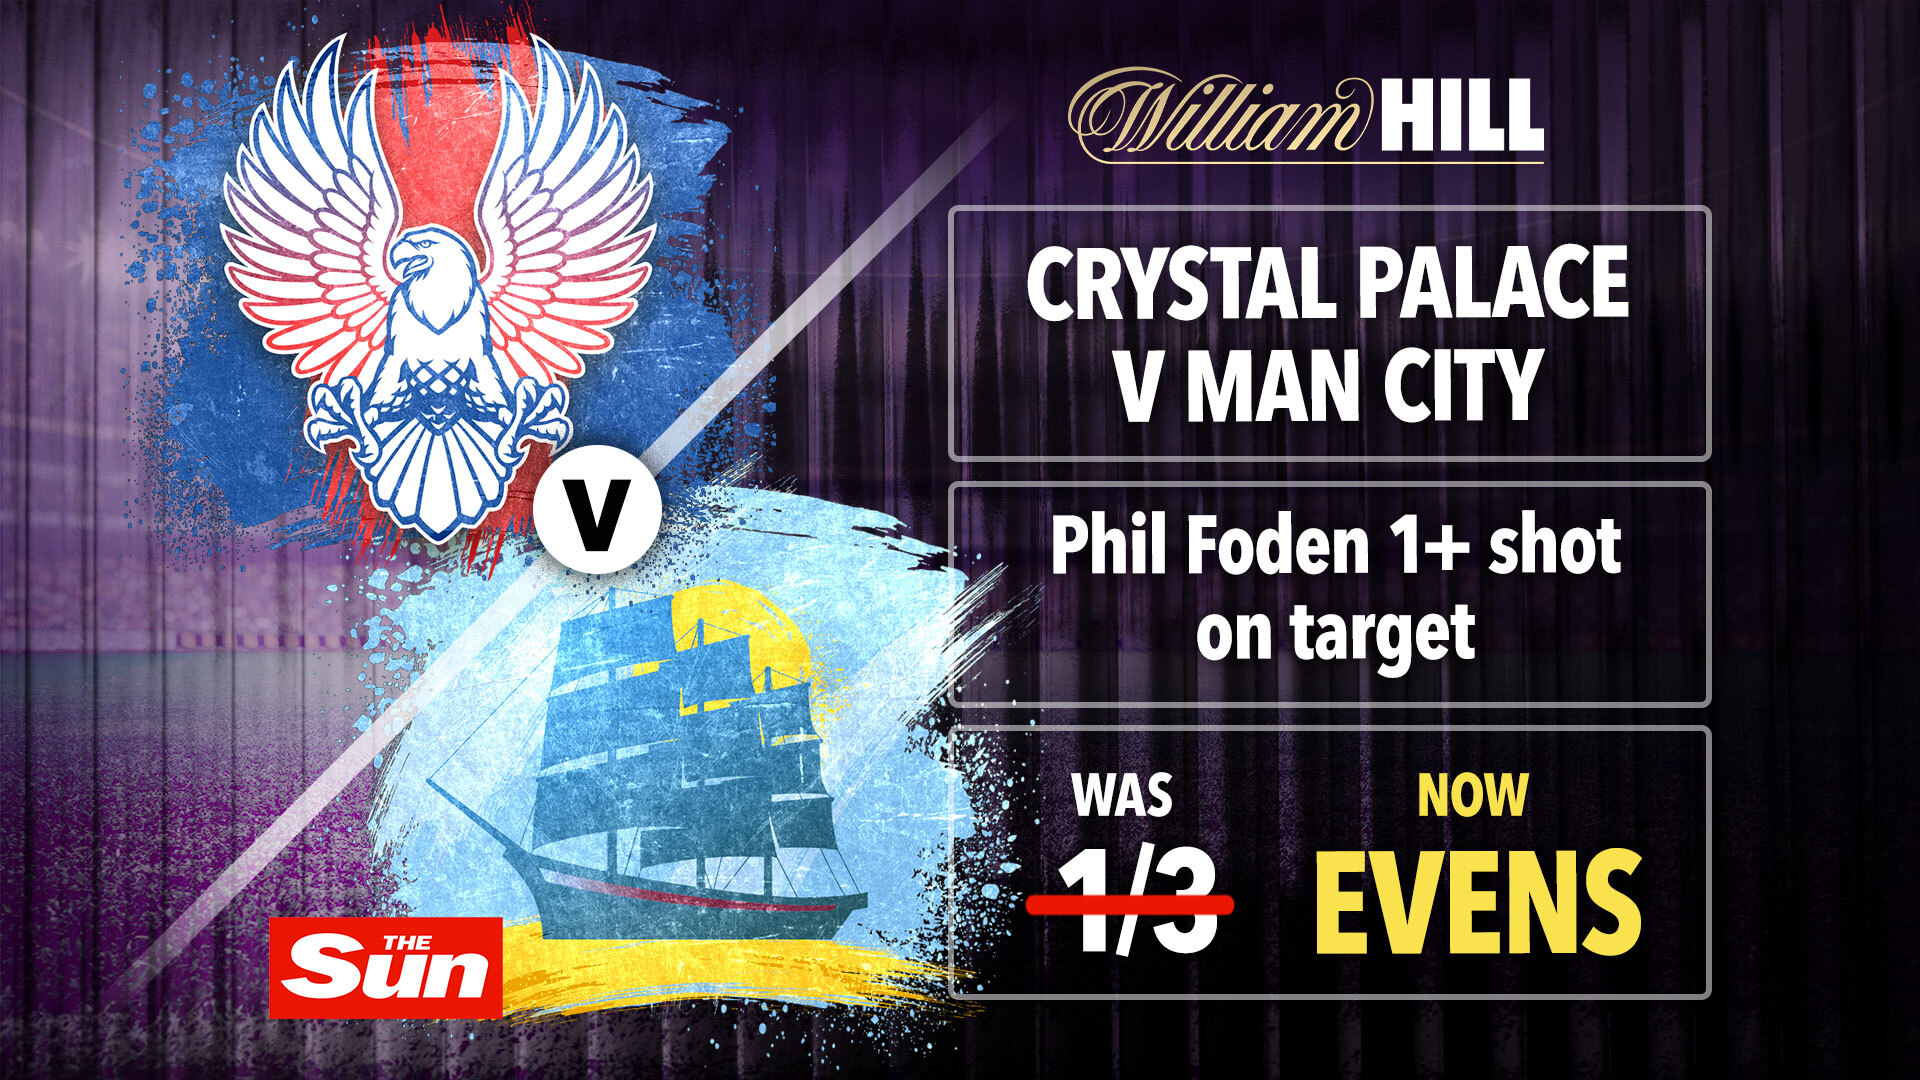 Crystal Palace vs Gentleman City: obtenga 1+ tiro a puerta de Phil Foden en Evens con William Hill y reclame un bono de £ 60